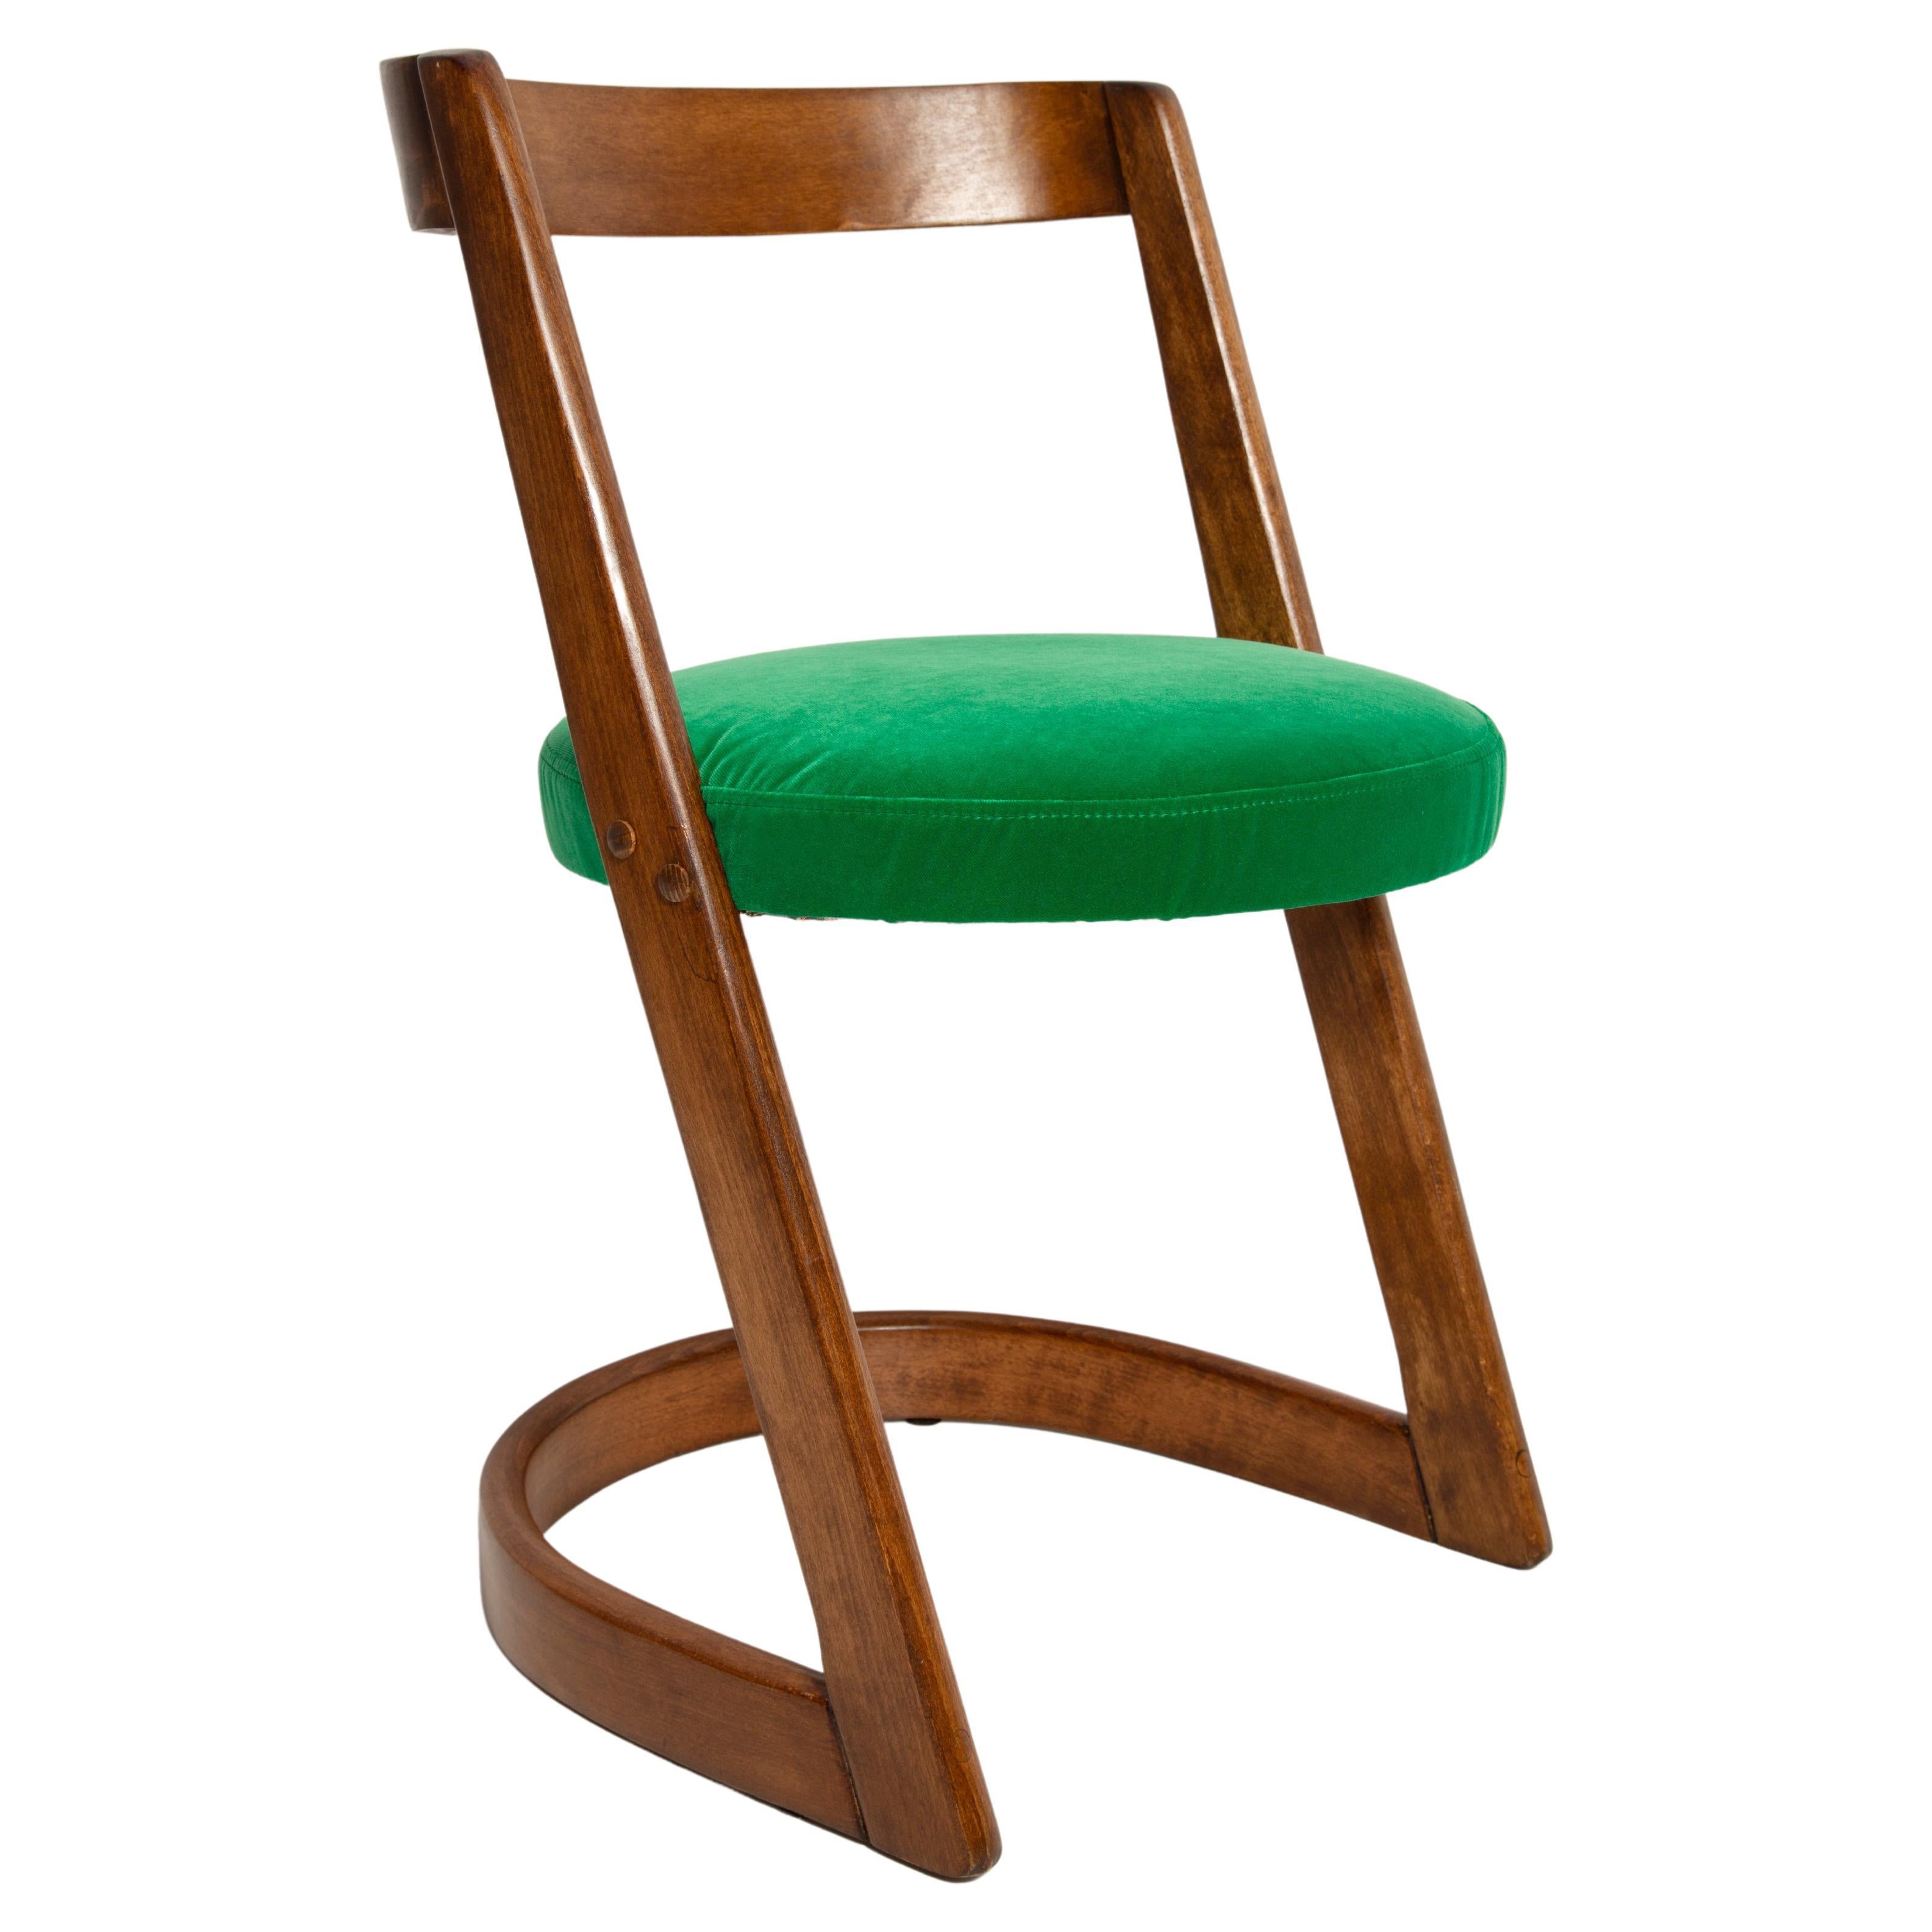 Halfa-Sessel aus grünem Samt, Baumann, Frankreich, 1970er Jahre